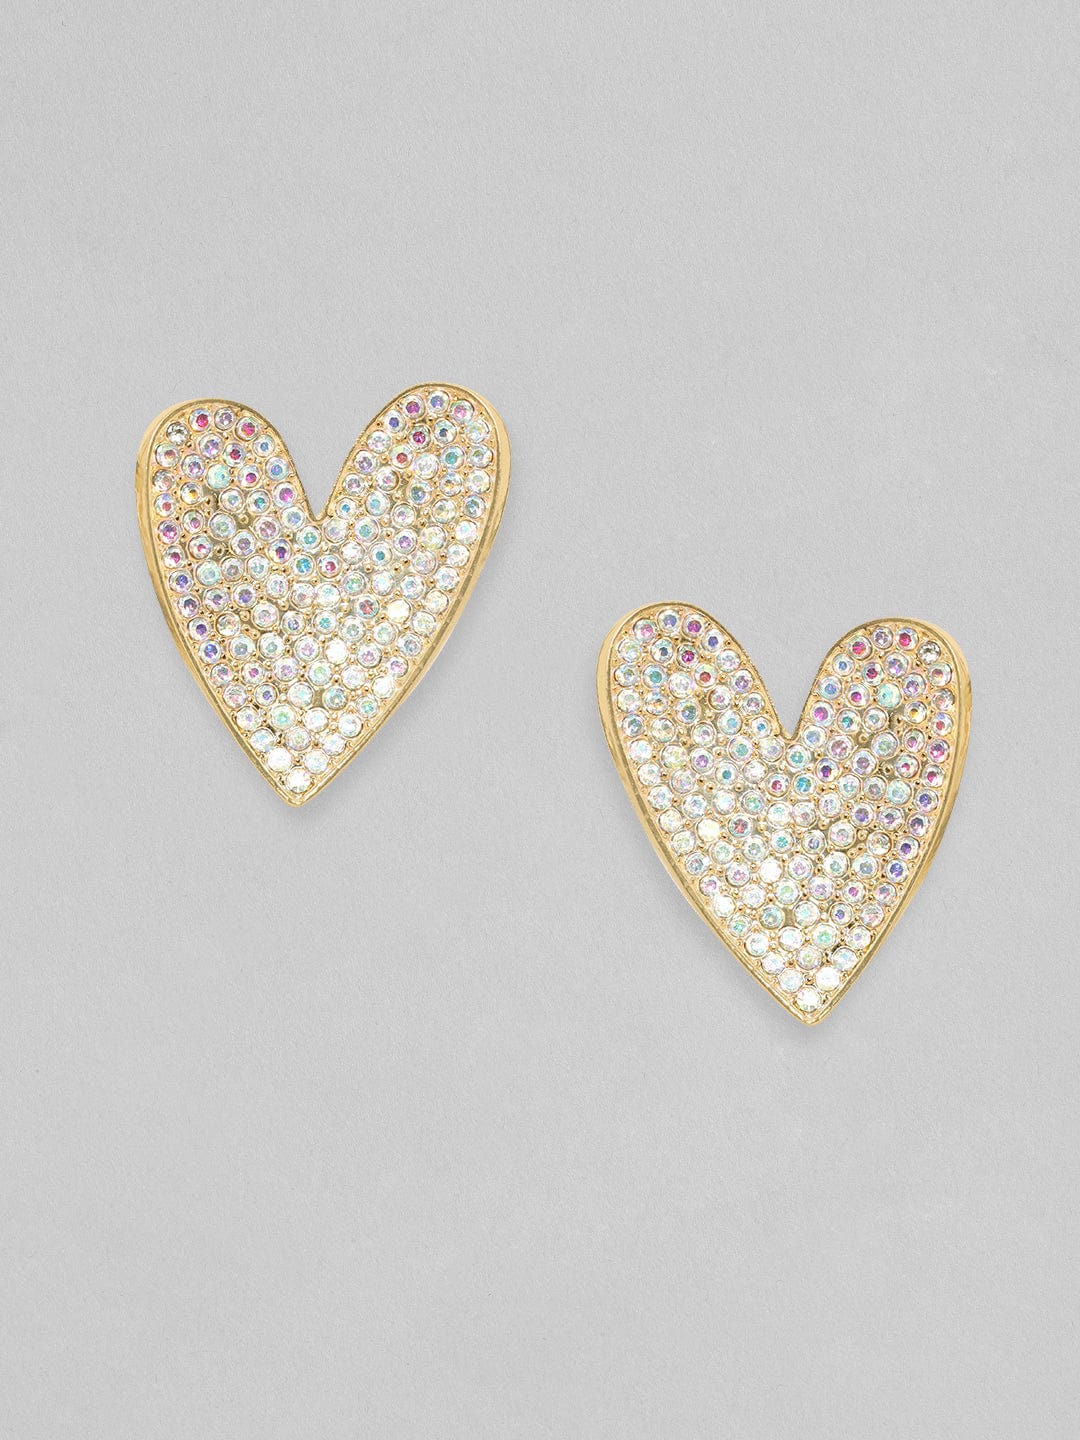 Rubans 18K Gold Toned White Zircons Studded Heart Stud Earring Earrings